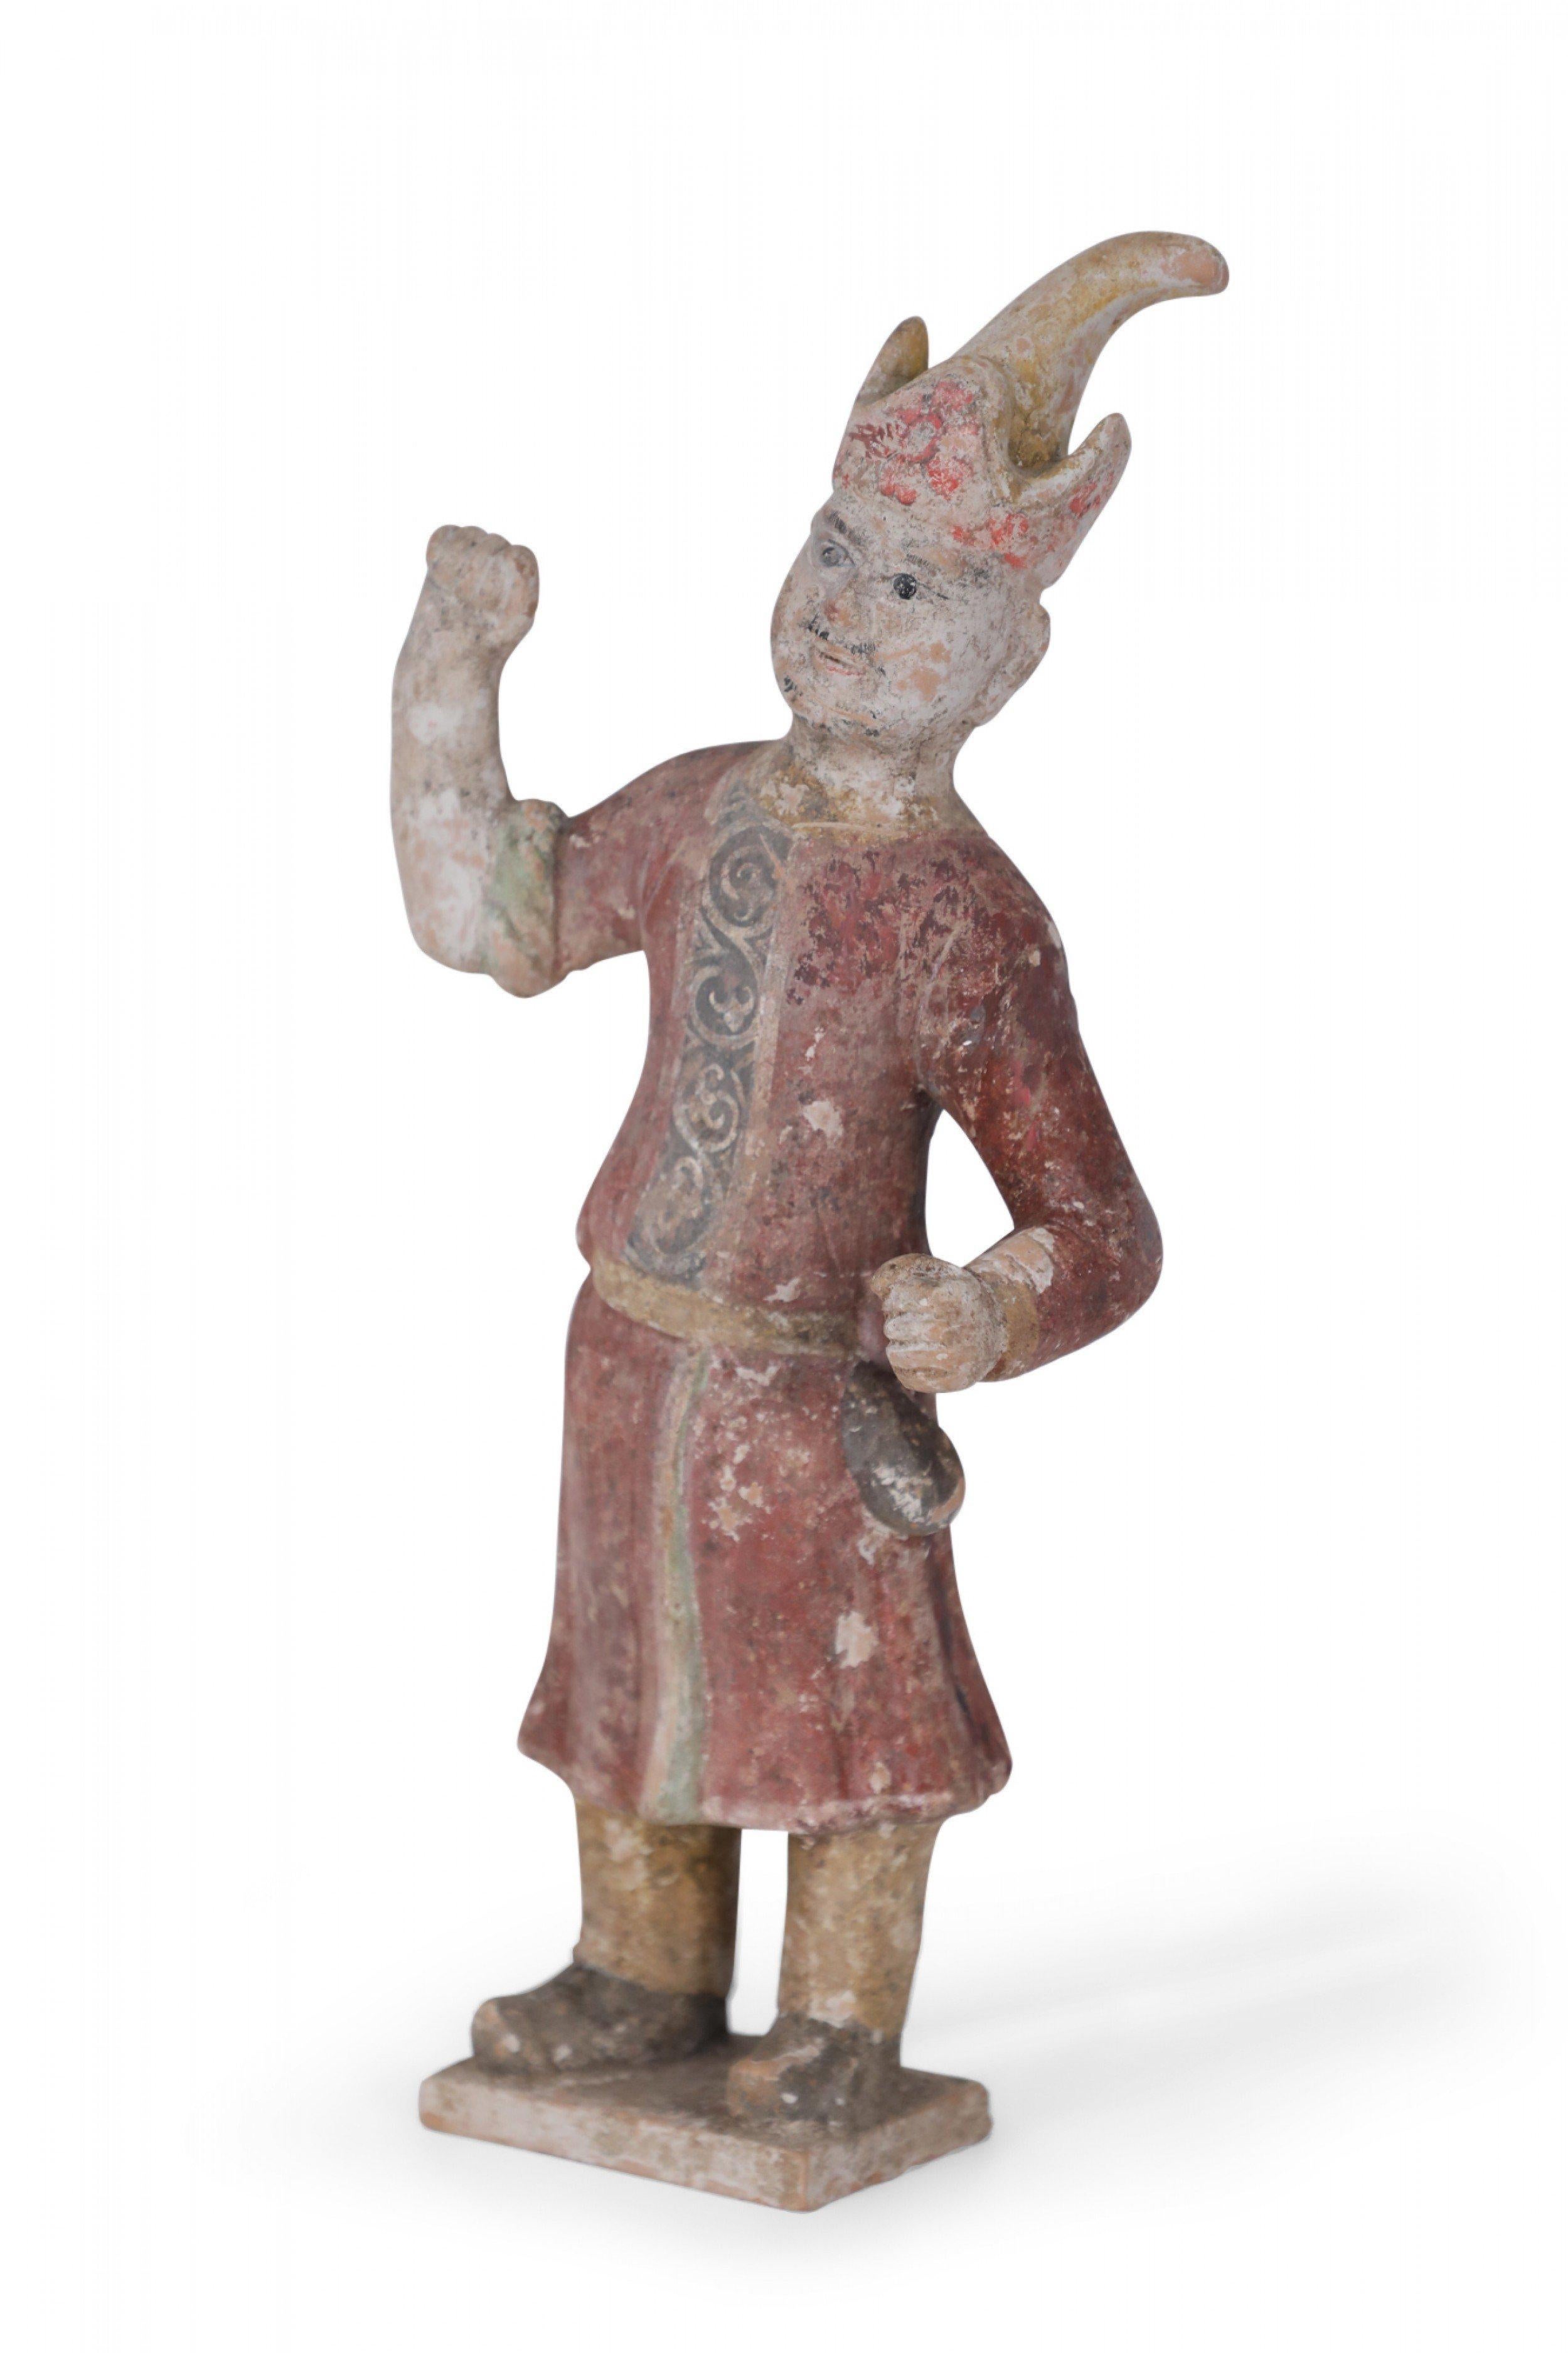 Antike chinesische Terrakotta-Grabfigur im Stil der Tang-Dynastie eines Mannes der Huren (nördliche Stammesangehörige) in rotem Gewand und mit auffälligem Hut, der eine Faust in die Luft streckt.
 